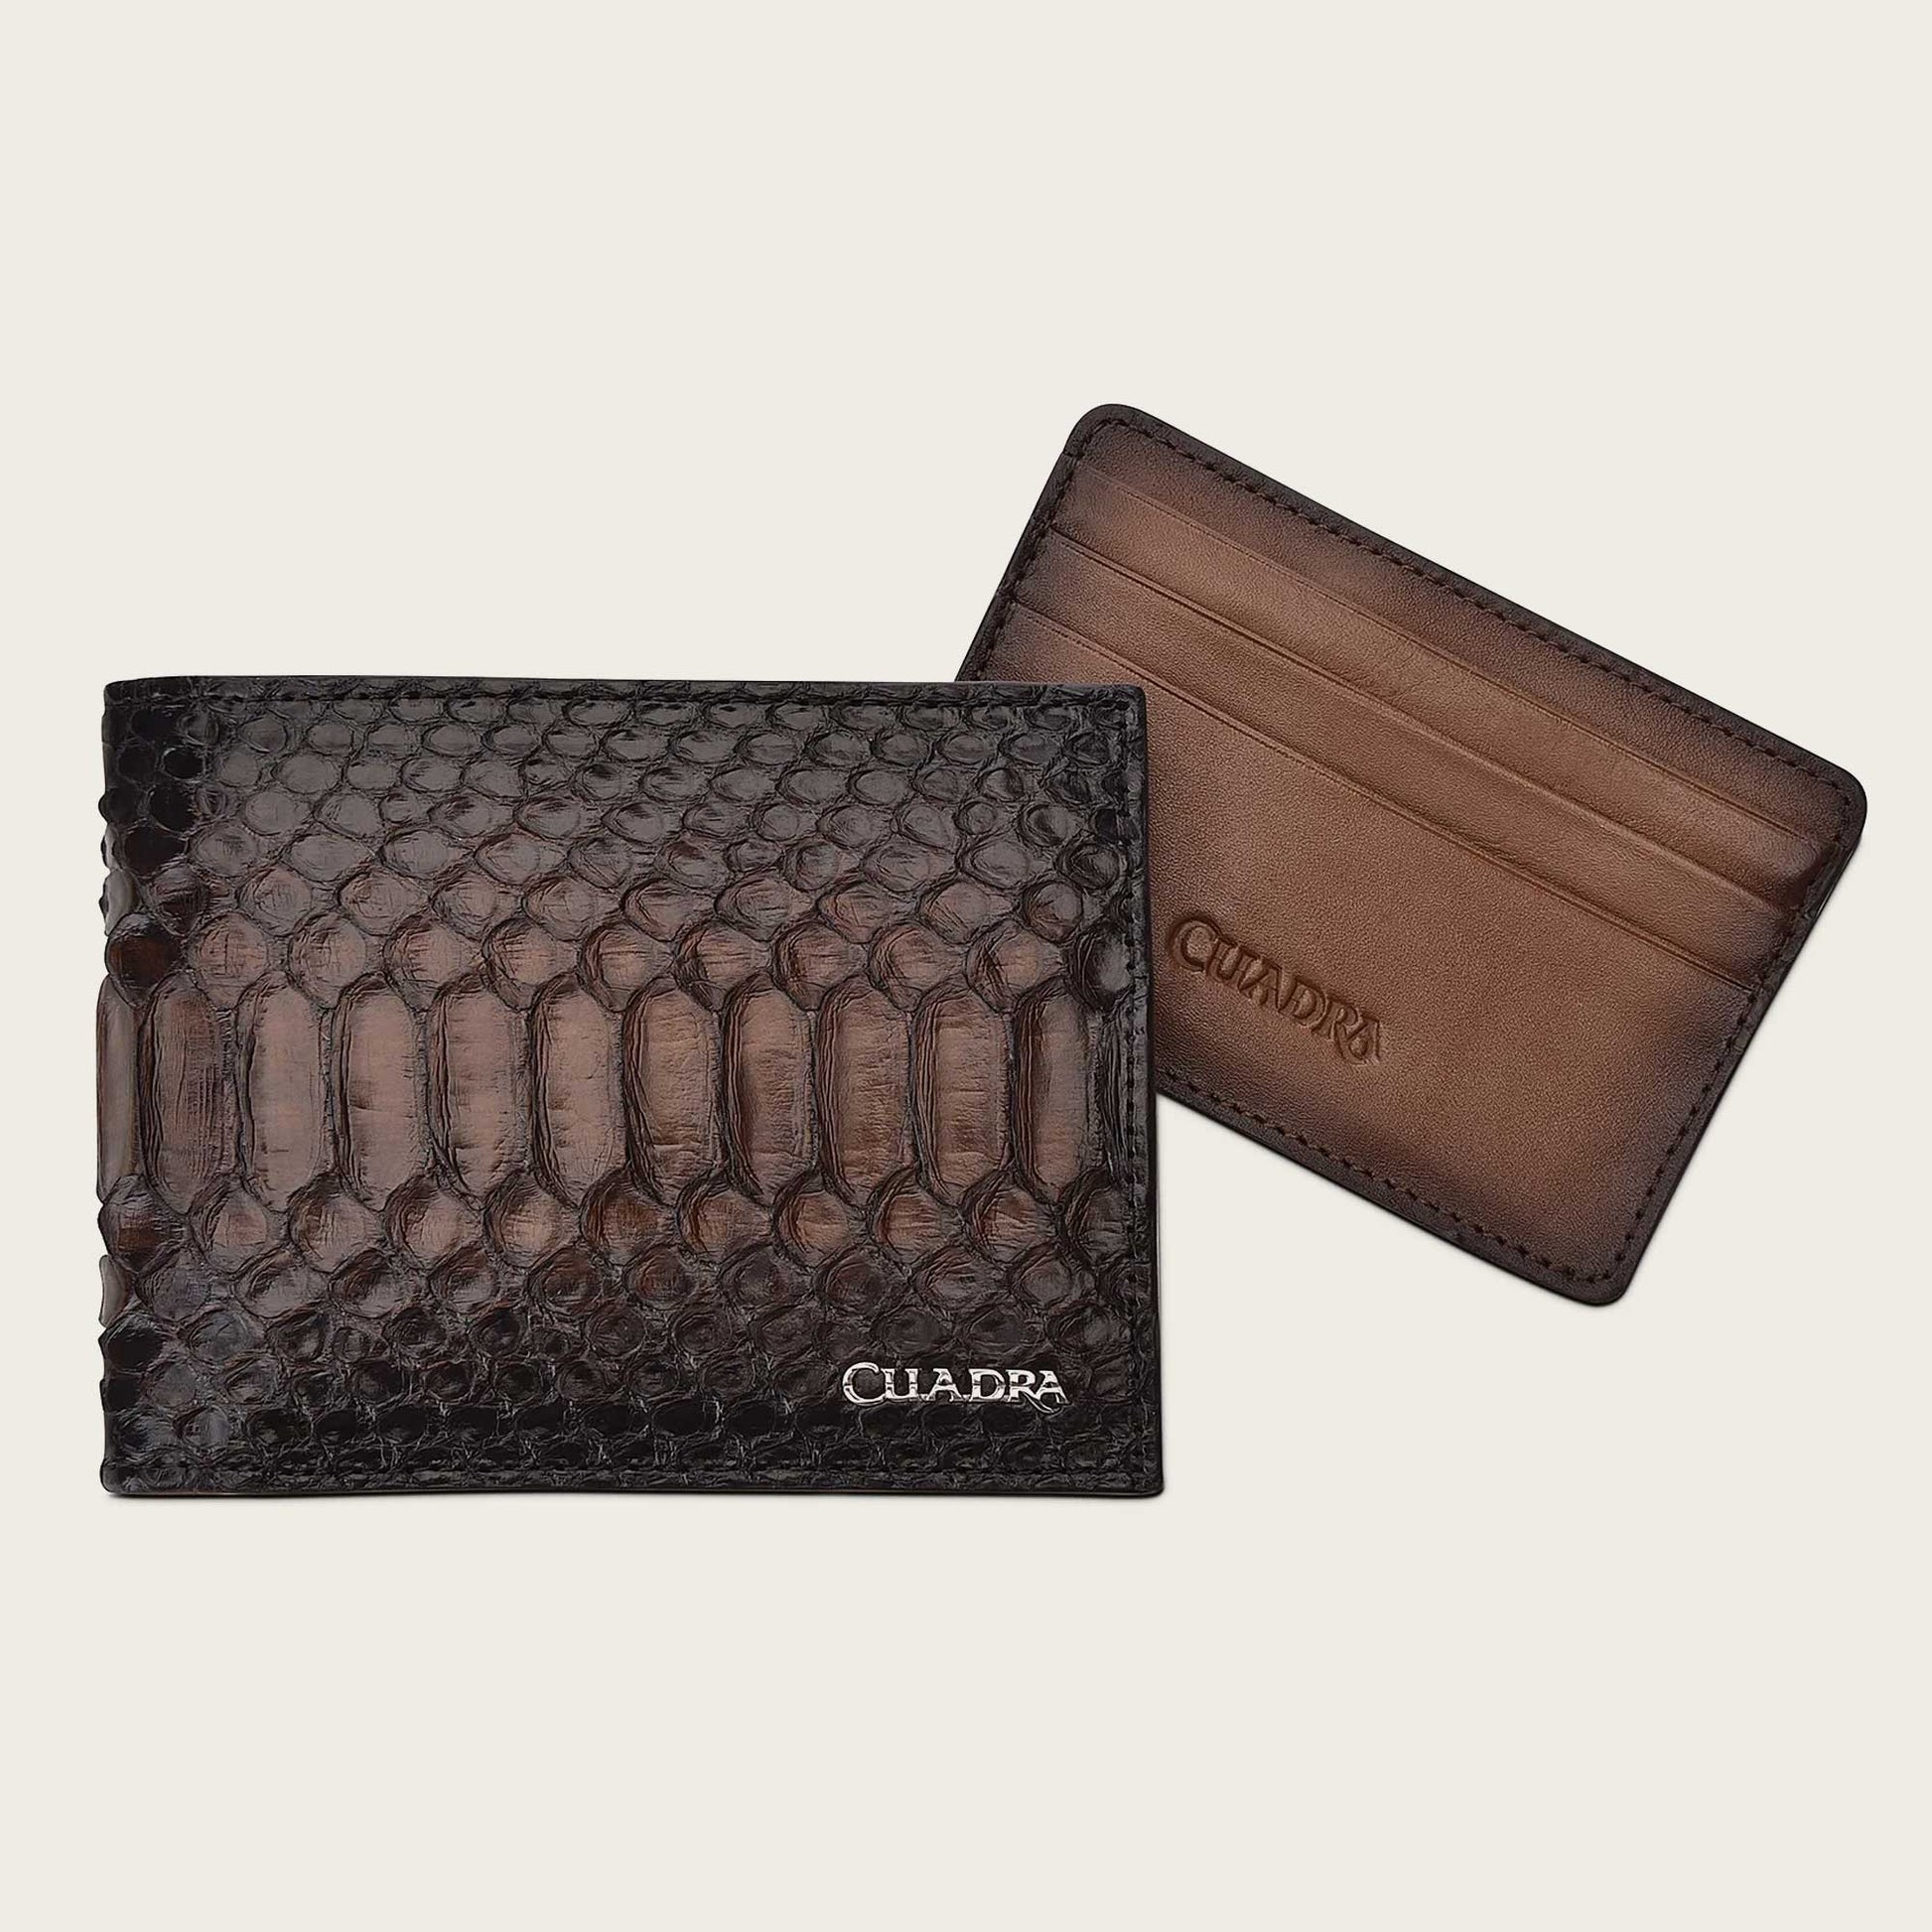 Bifold Compact Python Leather Wallet, Dark Brown